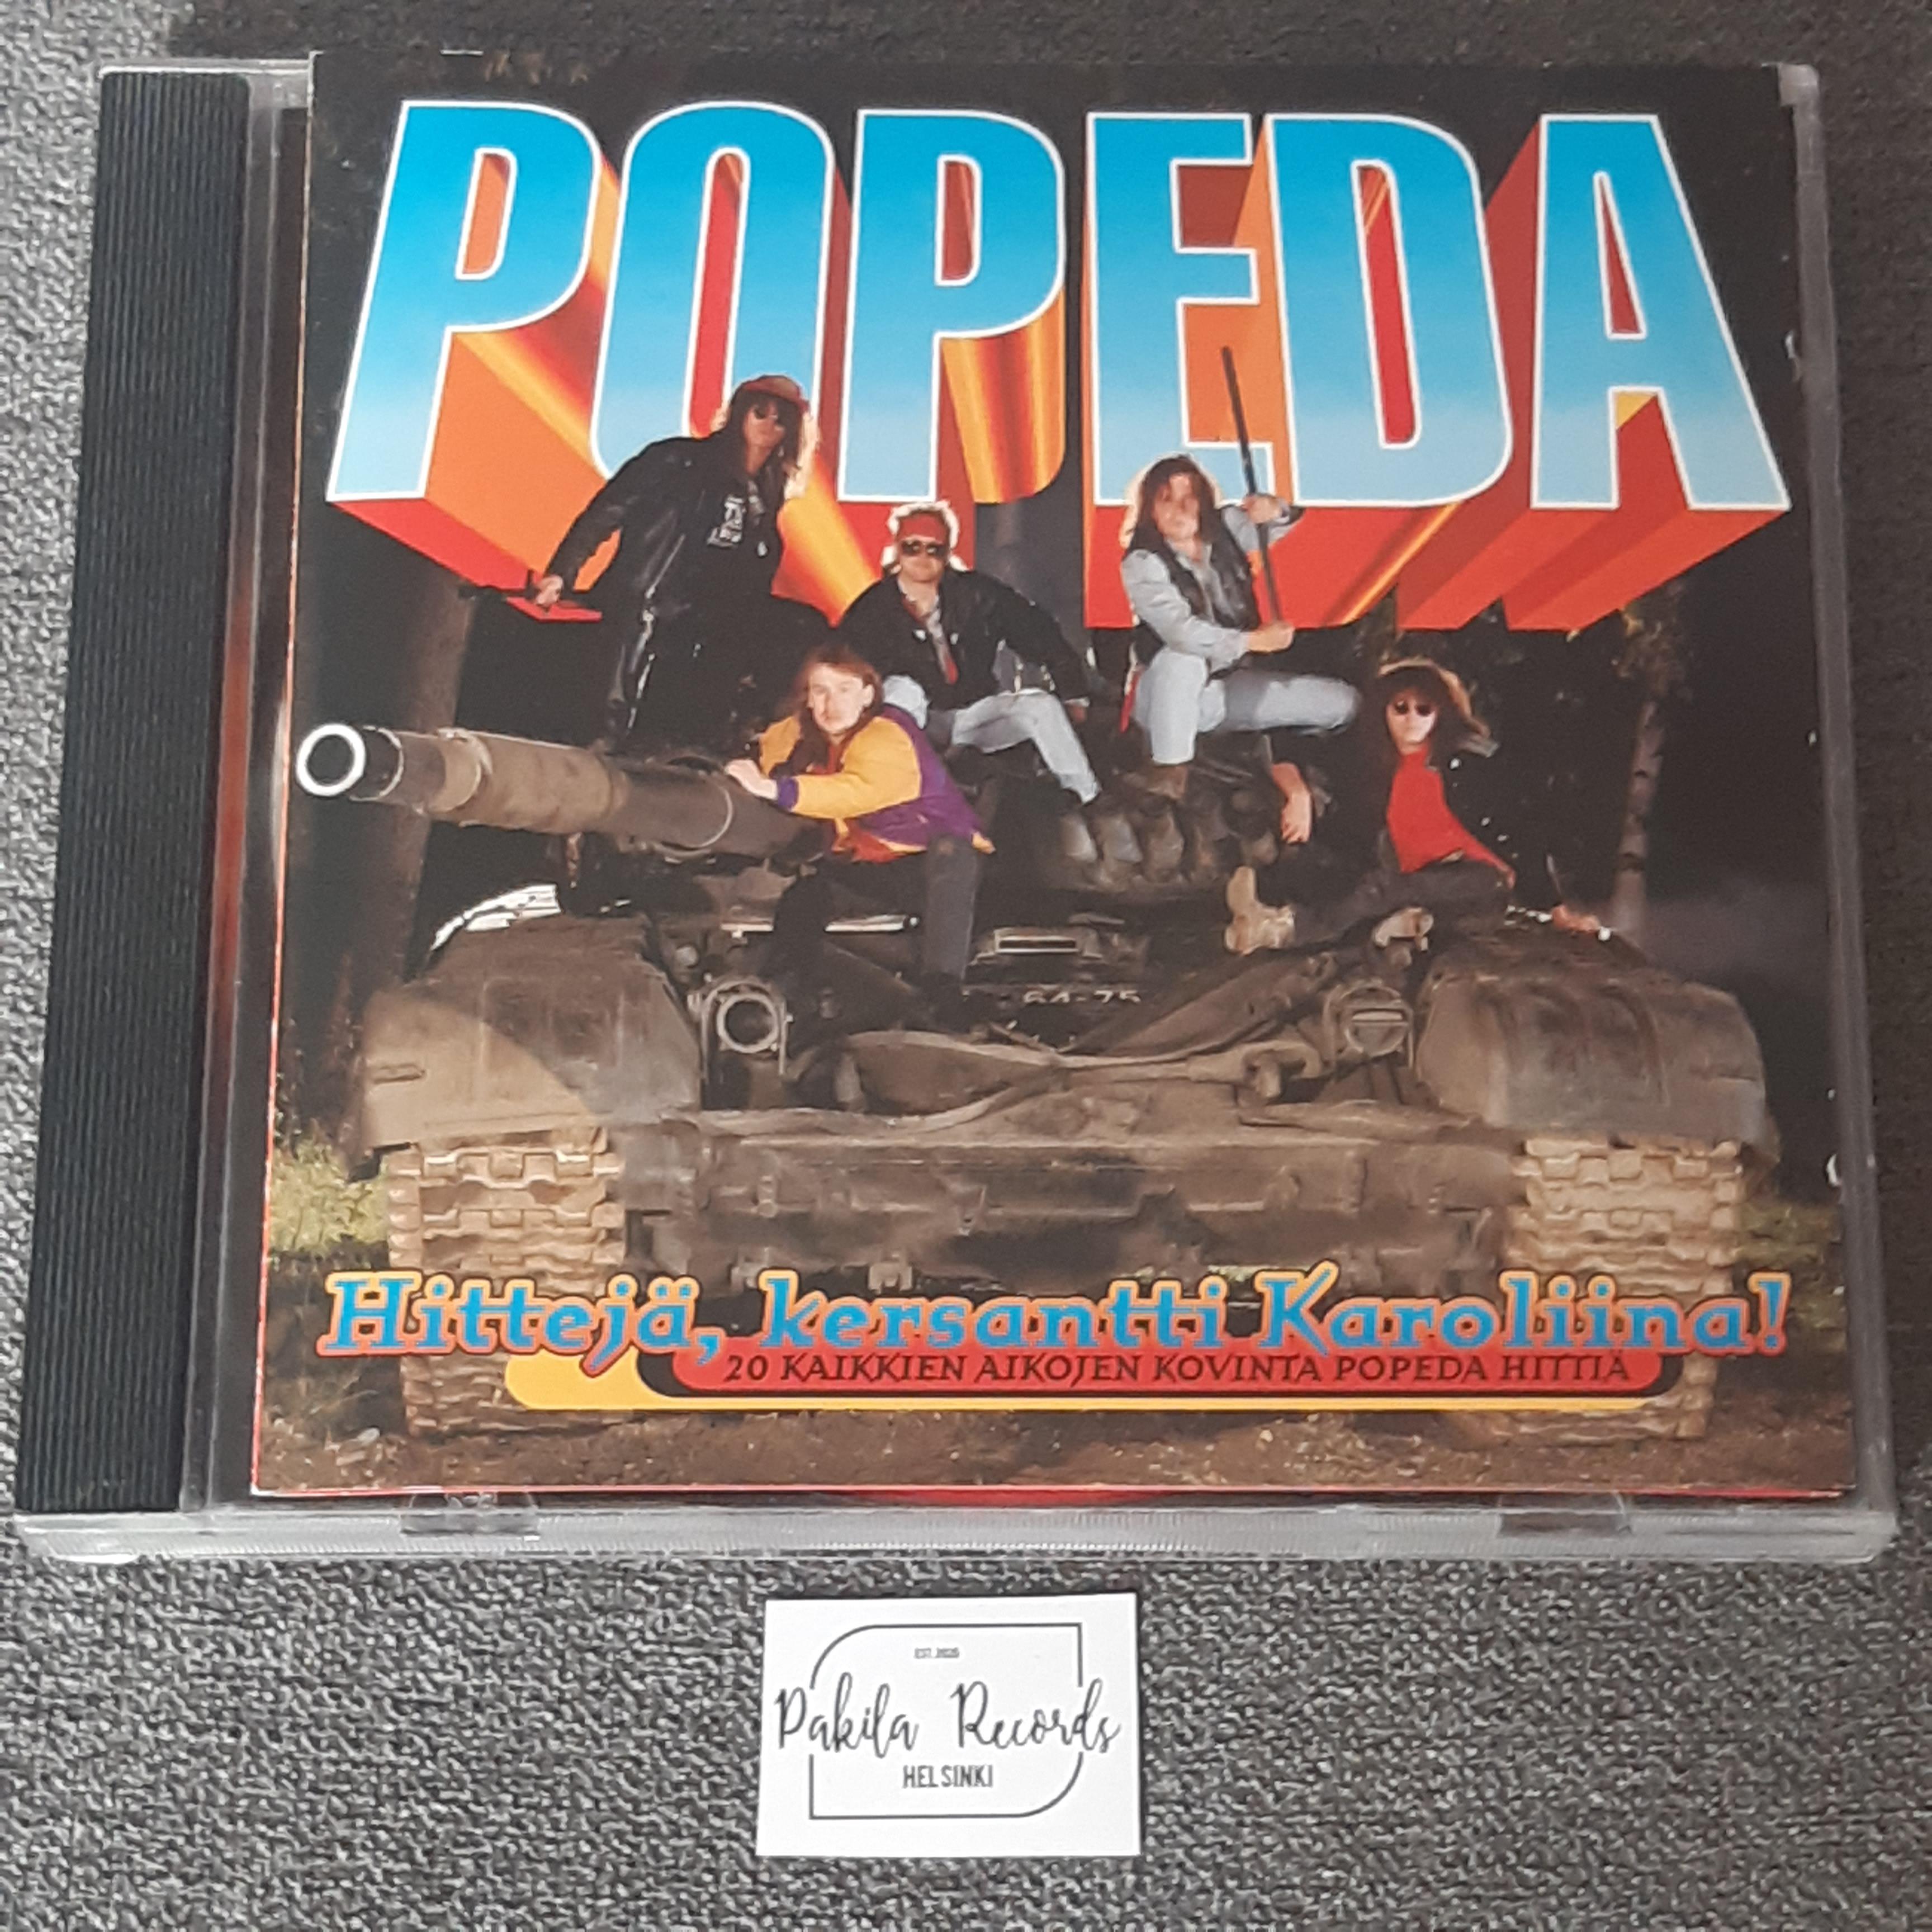 Popeda - Hittejä, kersantti Karoliina! - CD (käytetty)